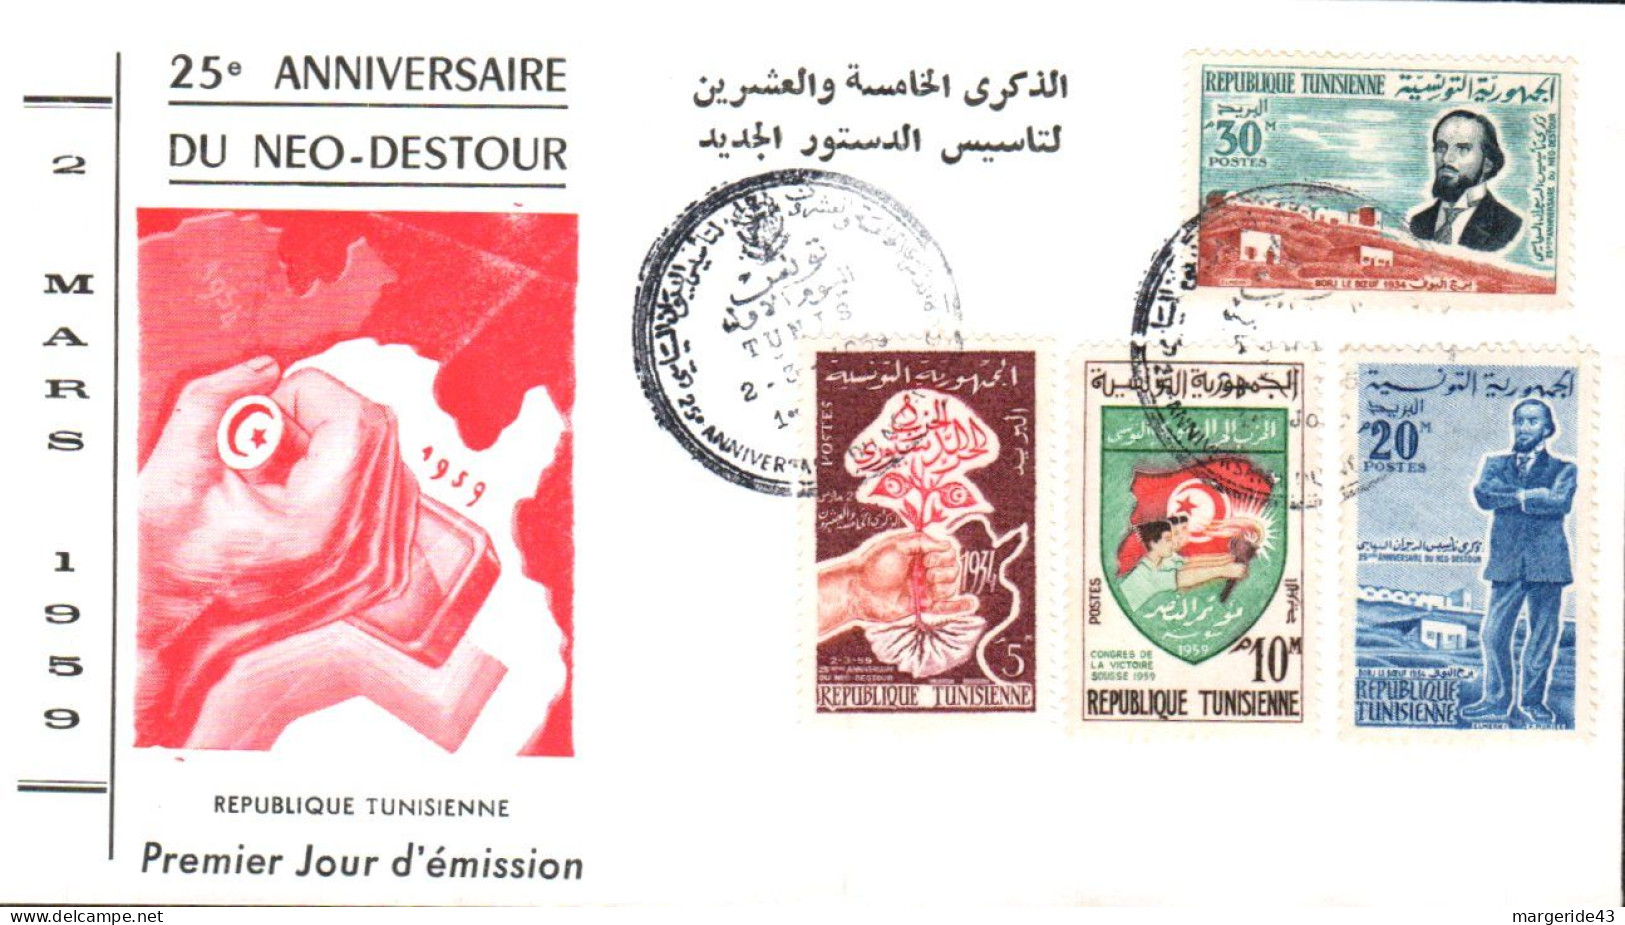 TUNISIE FDC 1959 25 ANS DU NEO DESTOUR - Tunesien (1956-...)